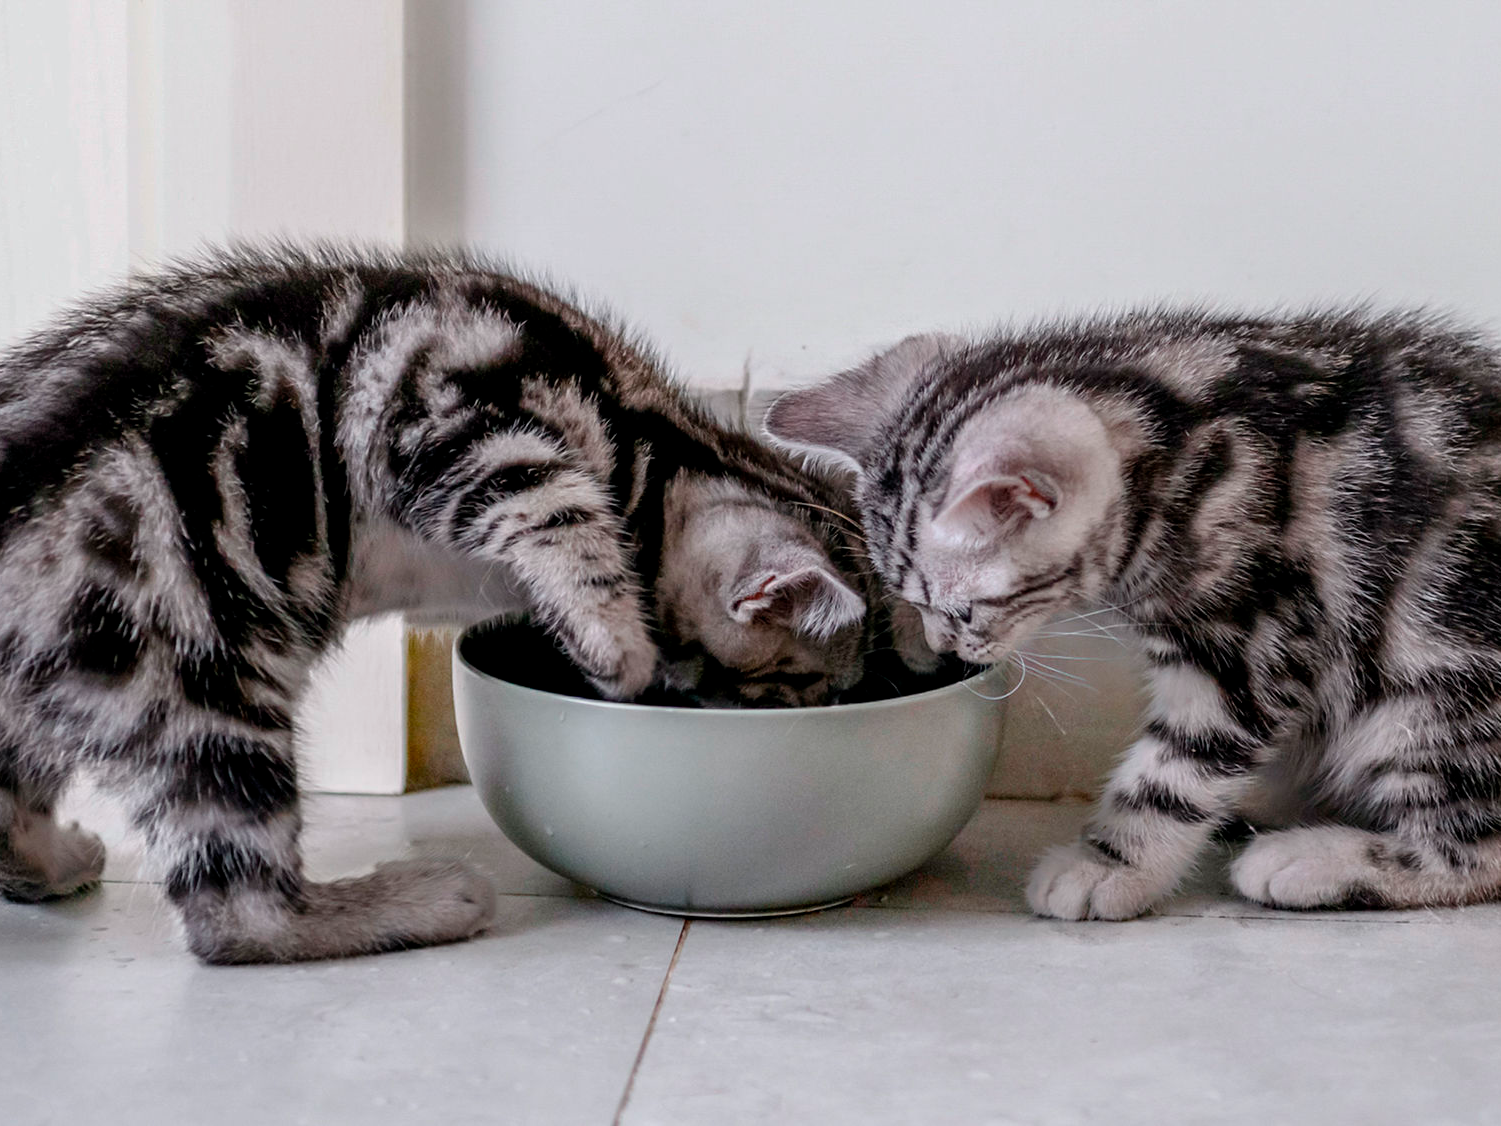 은색 사료 그릇 옆에 앉아 있는 새끼 고양이들